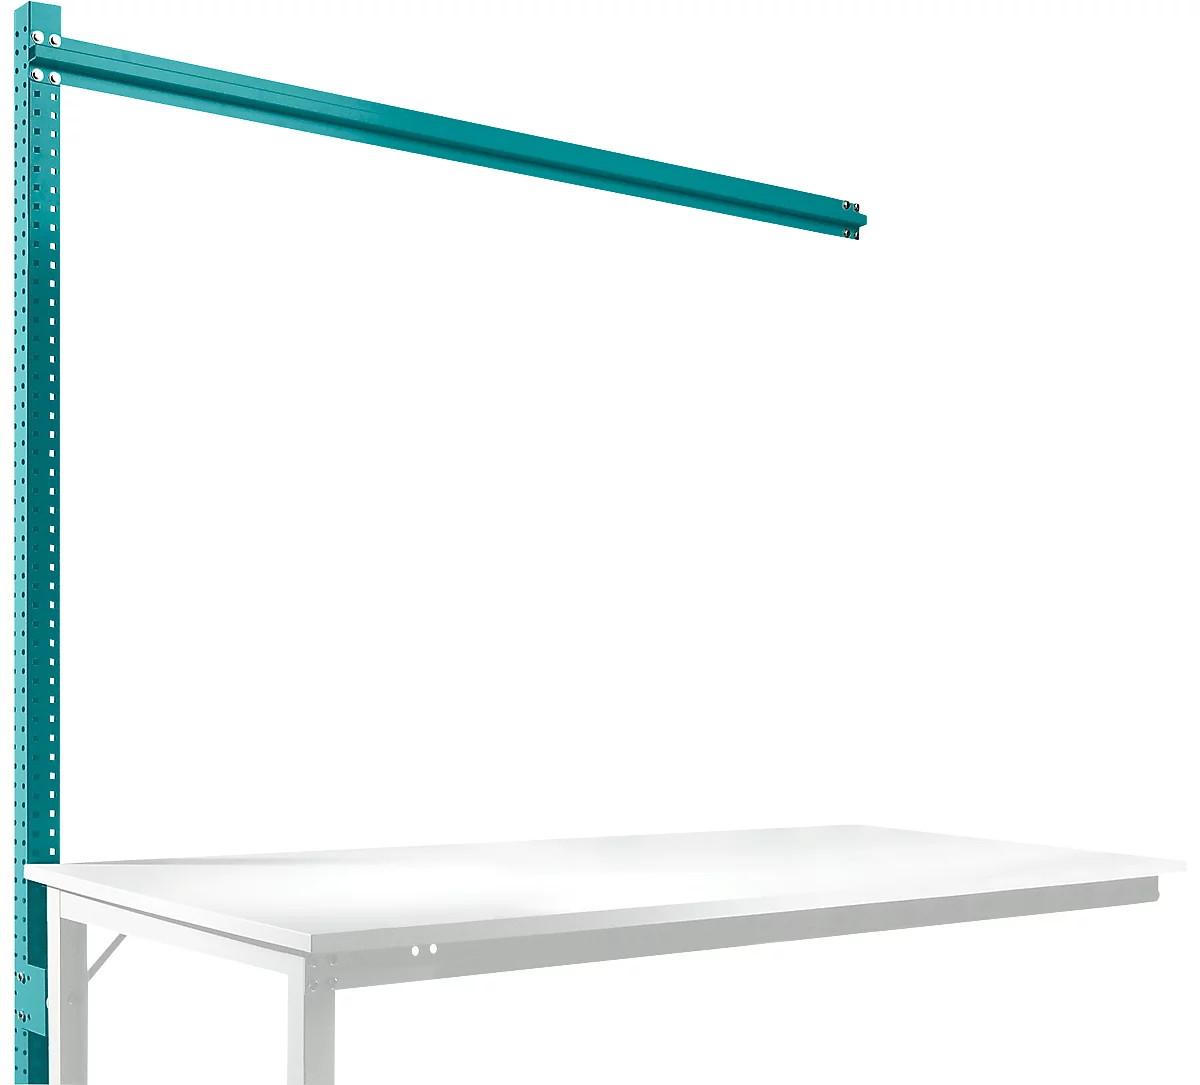 Estructura pórtica adicional para mesa de extensión STANDARD sistema mesa de trabajo/banco de trabajo UNIVERSAL/PROFI, 1750 mm, azul agua